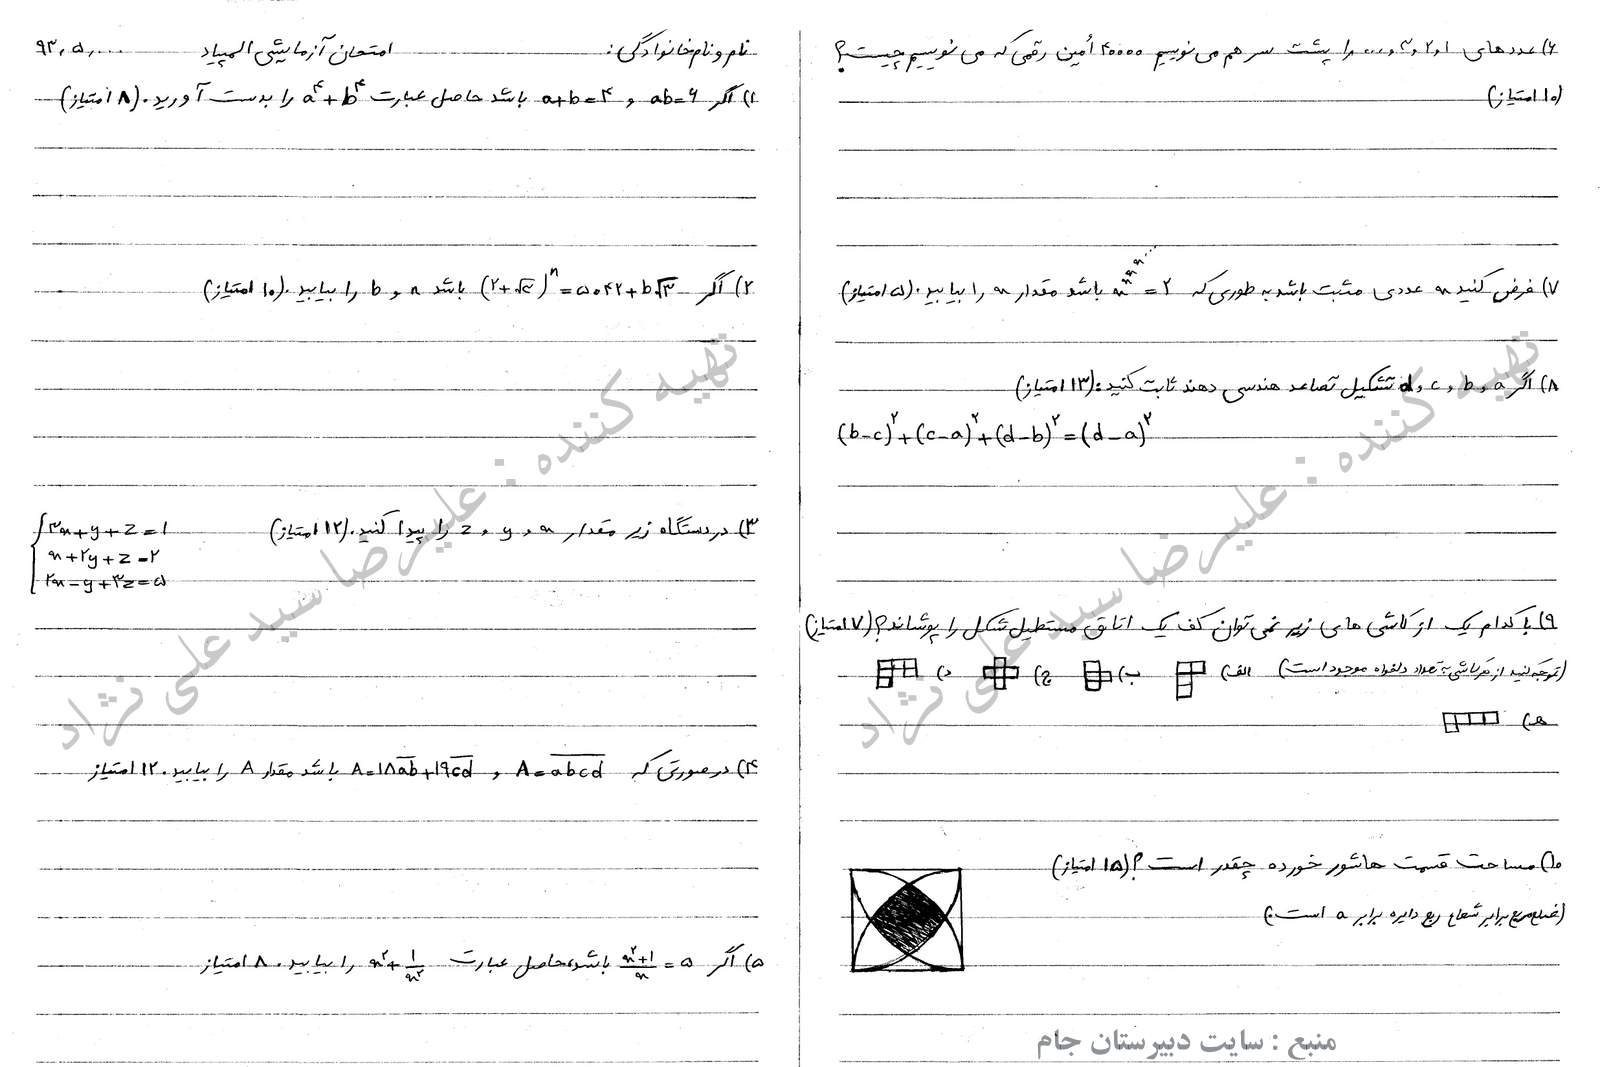 سوالات امتحانی کلاس المپیاد ریاضی دبیرستان جام